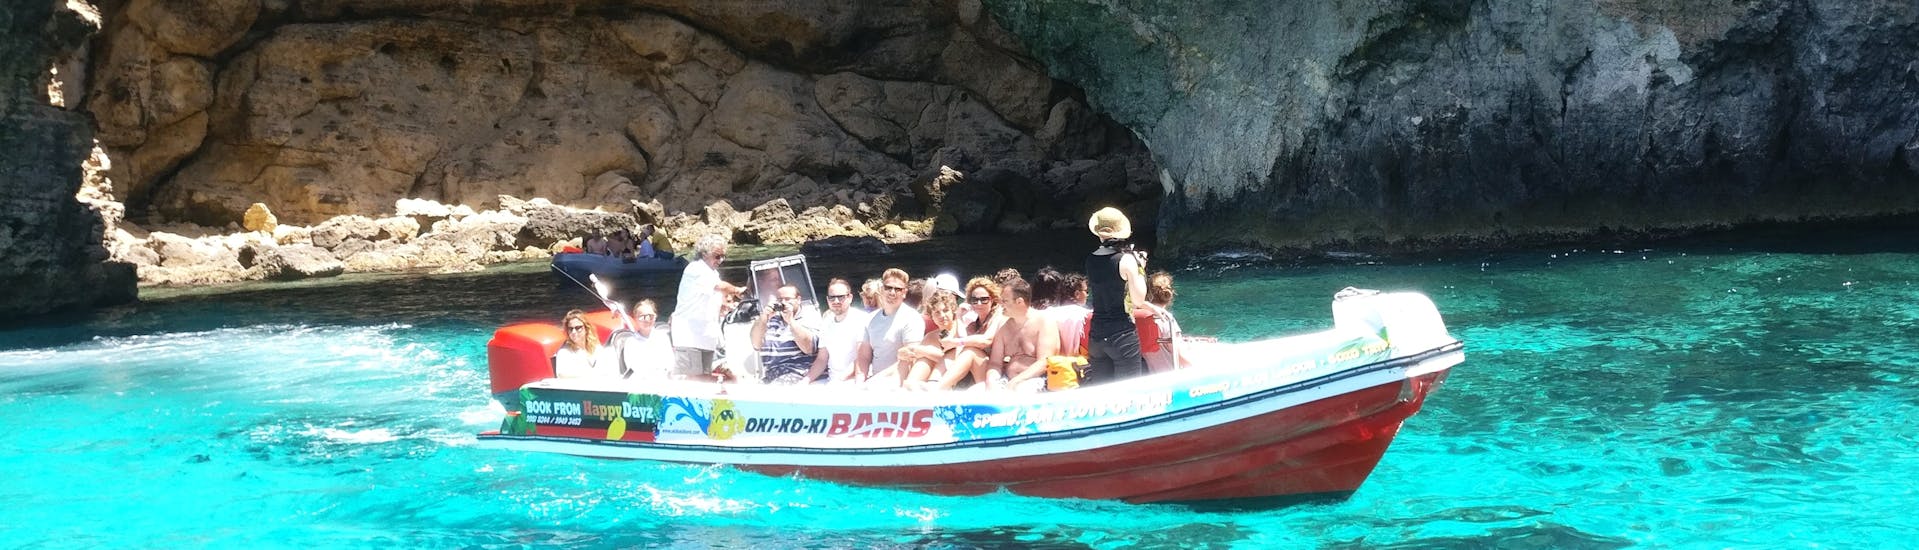 Die Passagiere genießen die Sonne während der Speeboat-Tour zu den Höhlen von Comino ab St. Julian's.